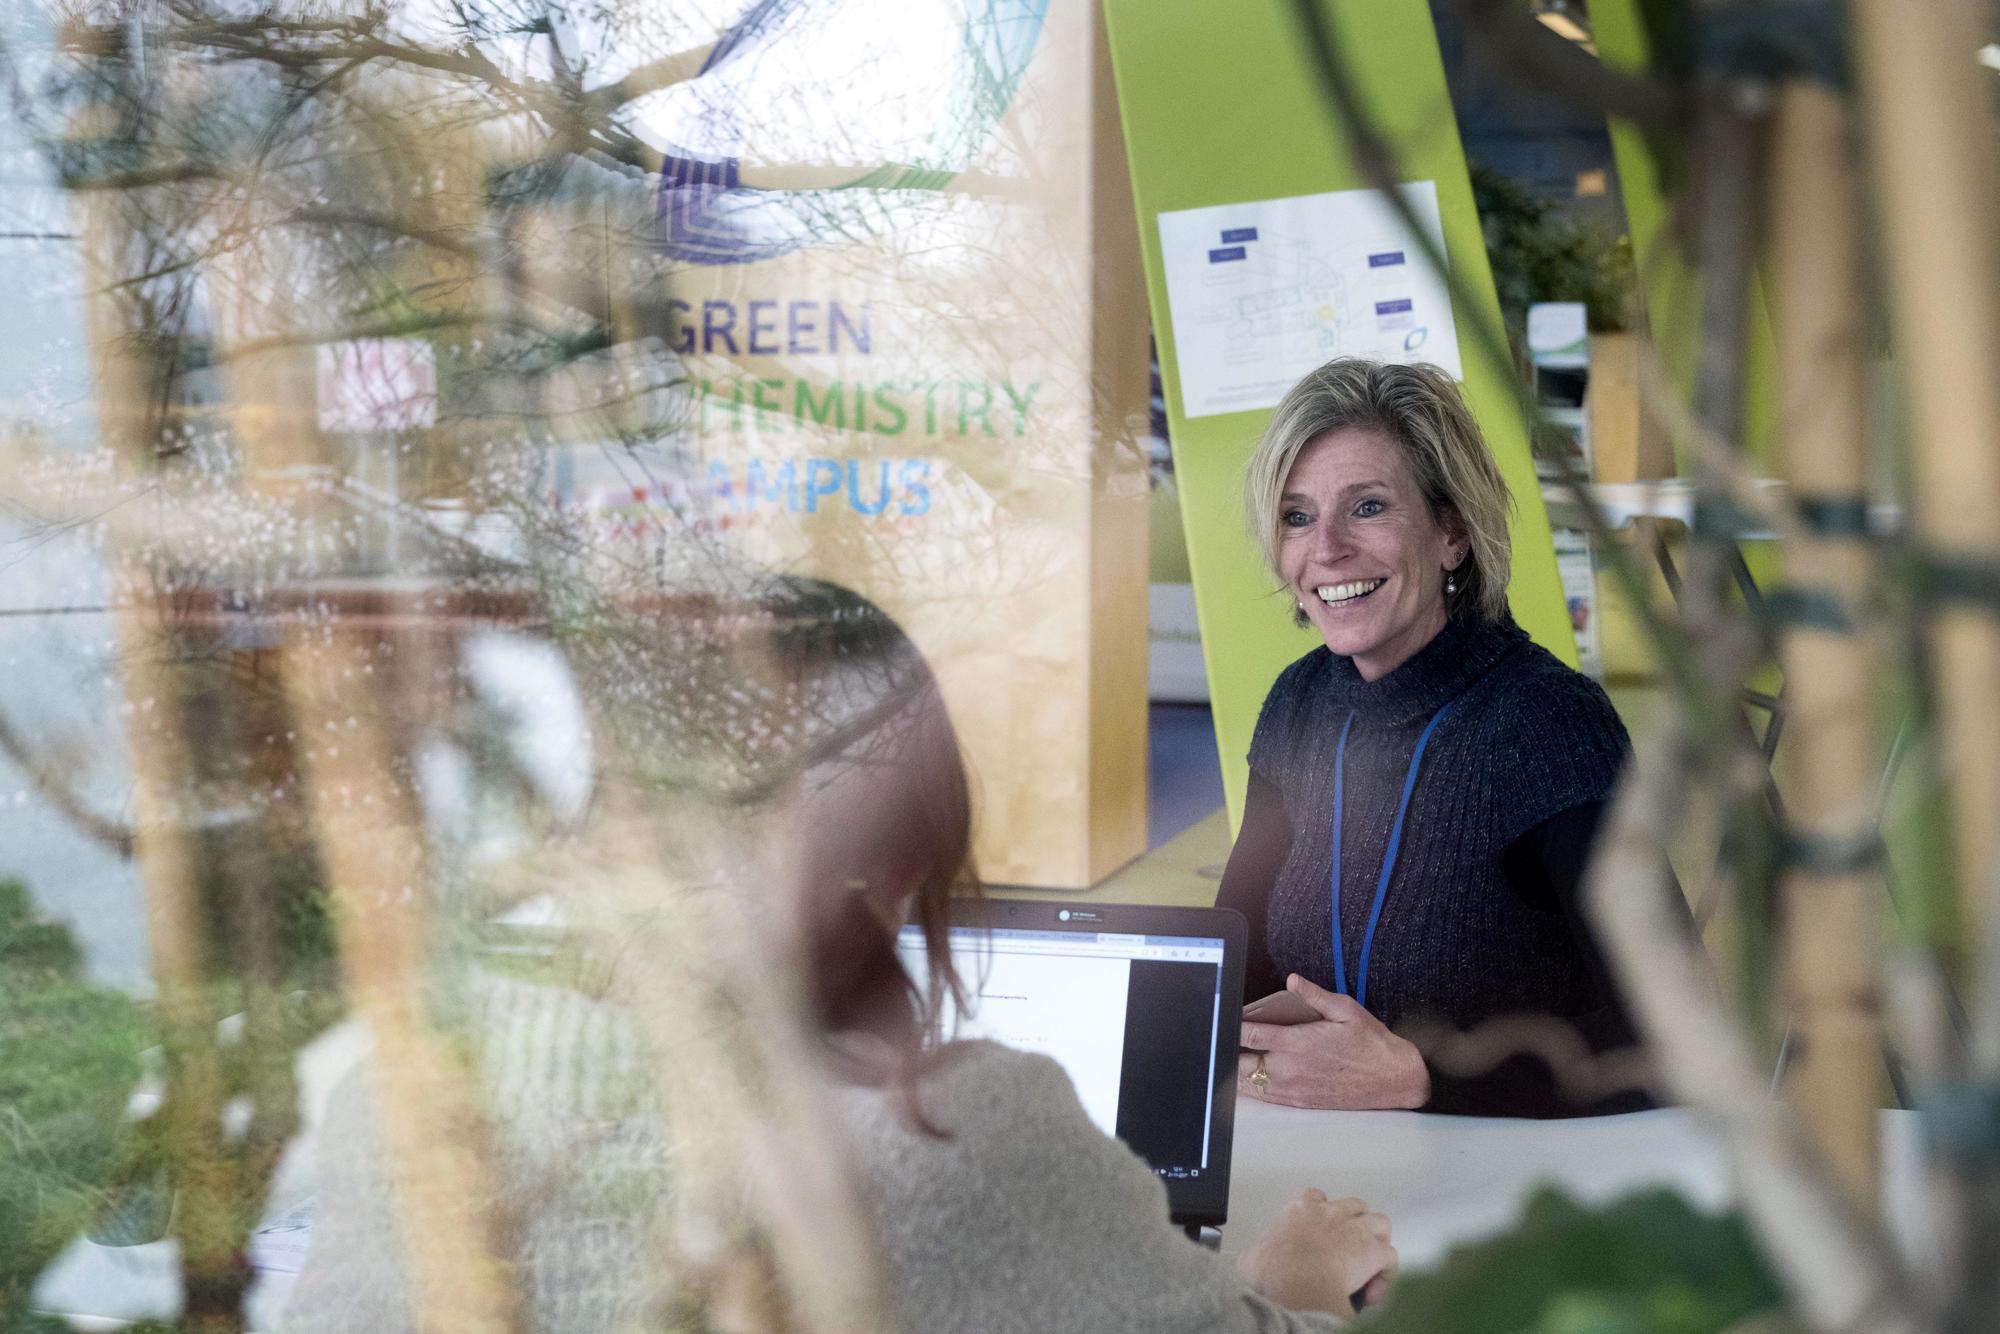 Petra Koenders vertelt over werken op de Green Chemistry Campus in Bergen op Zoom